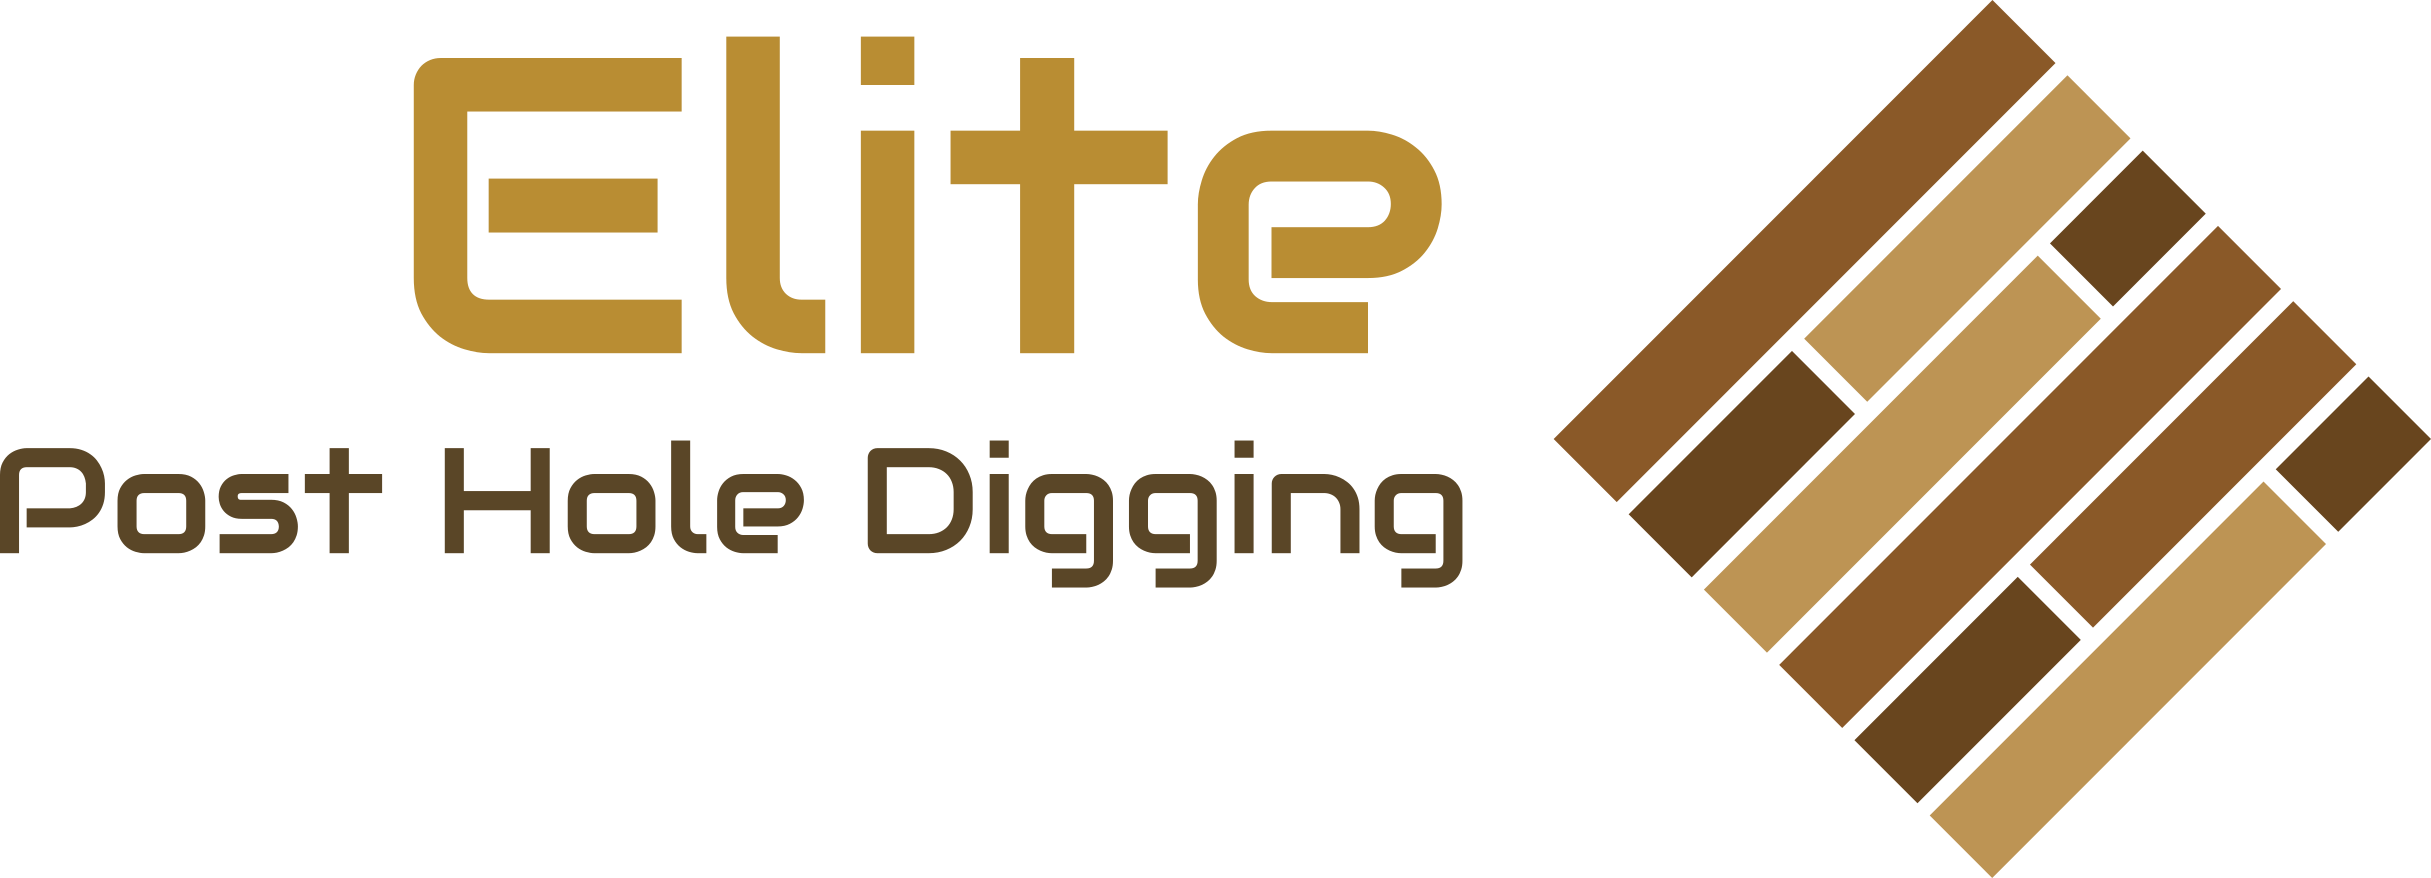 Elite Post Hole Digging